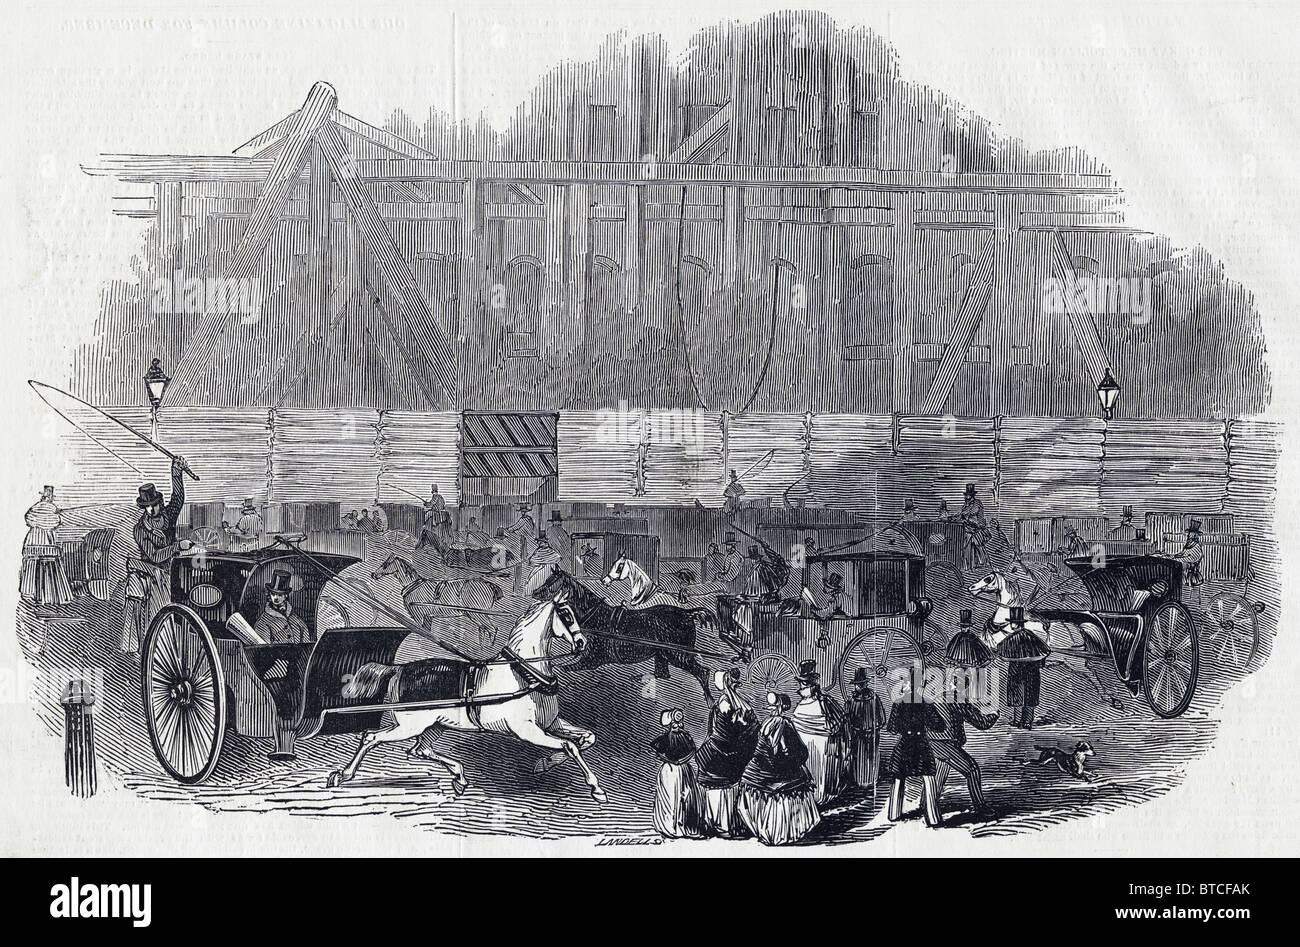 Les développeurs de fer dans les voitures de taxi et de fournir des plans pour les bureaux de la Chambre de commerce dans la région de Whitehall, le dimanche 30 novembre 1845 Banque D'Images